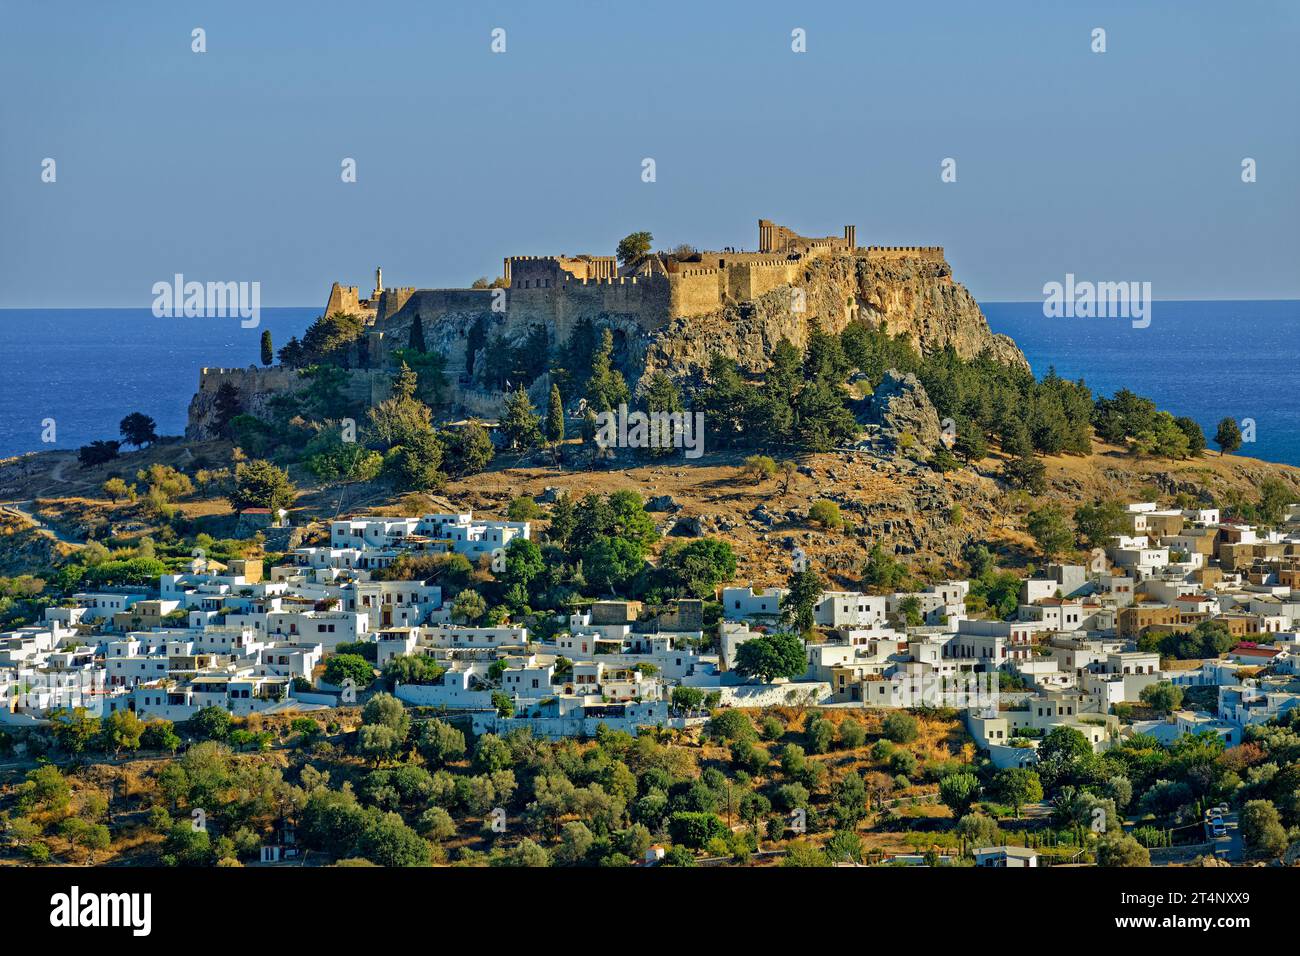 La città di Lindos sull'isola di Rodi con l'Acropoli di Lindos sul suo sito sopraelevato. Foto Stock